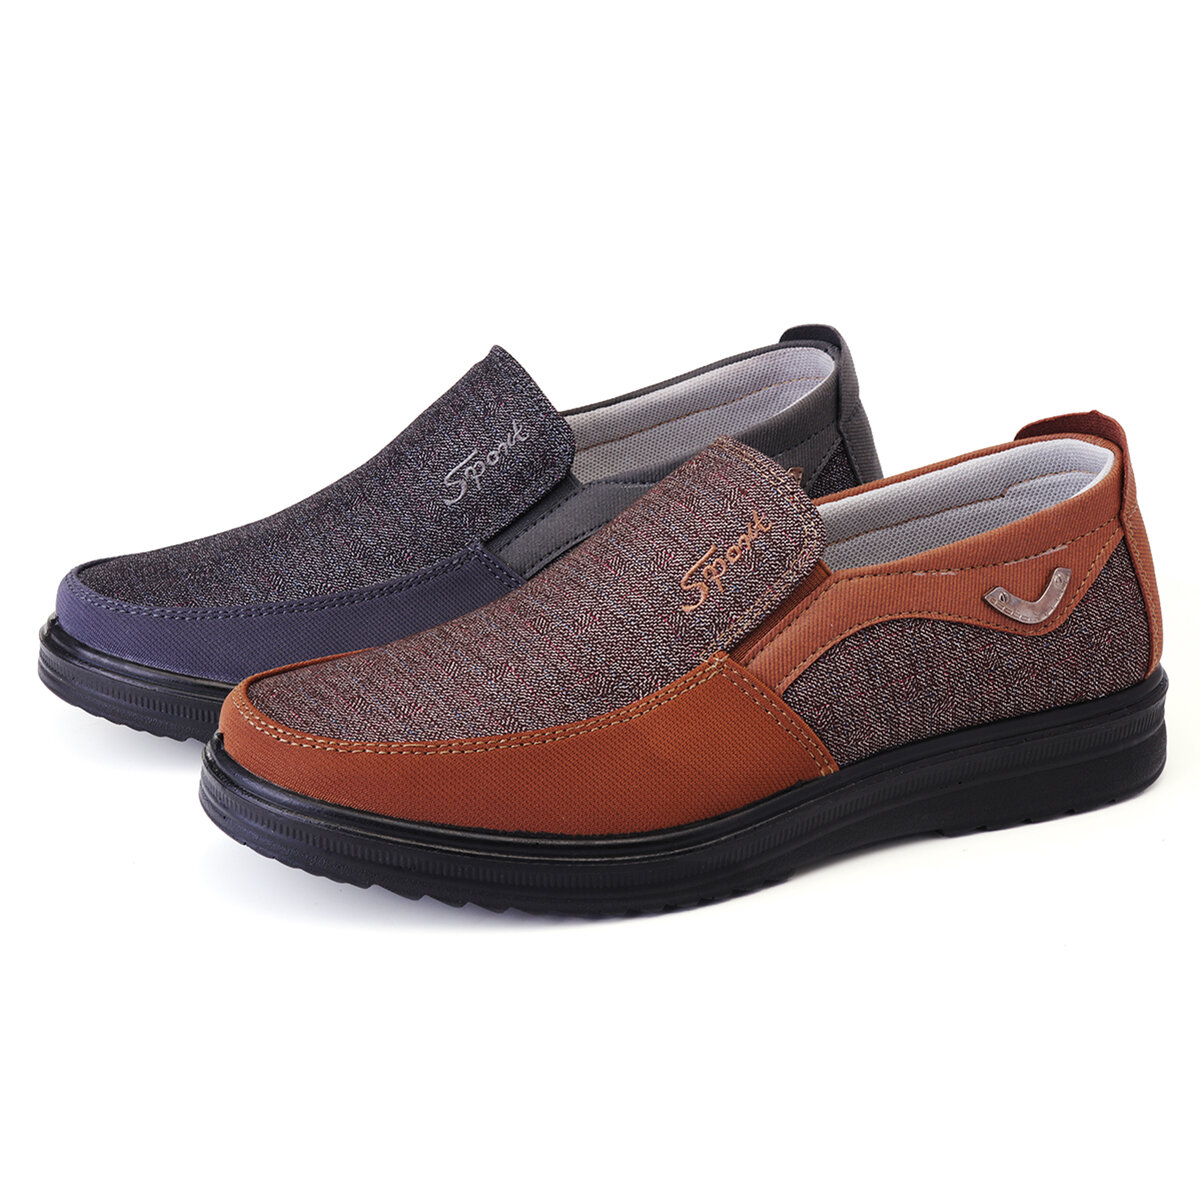 Calçados casuais masculinos de couro calçados redondos de biqueira antiderrapantes e respiráveis para caminhada ao ar livre calçados baixos